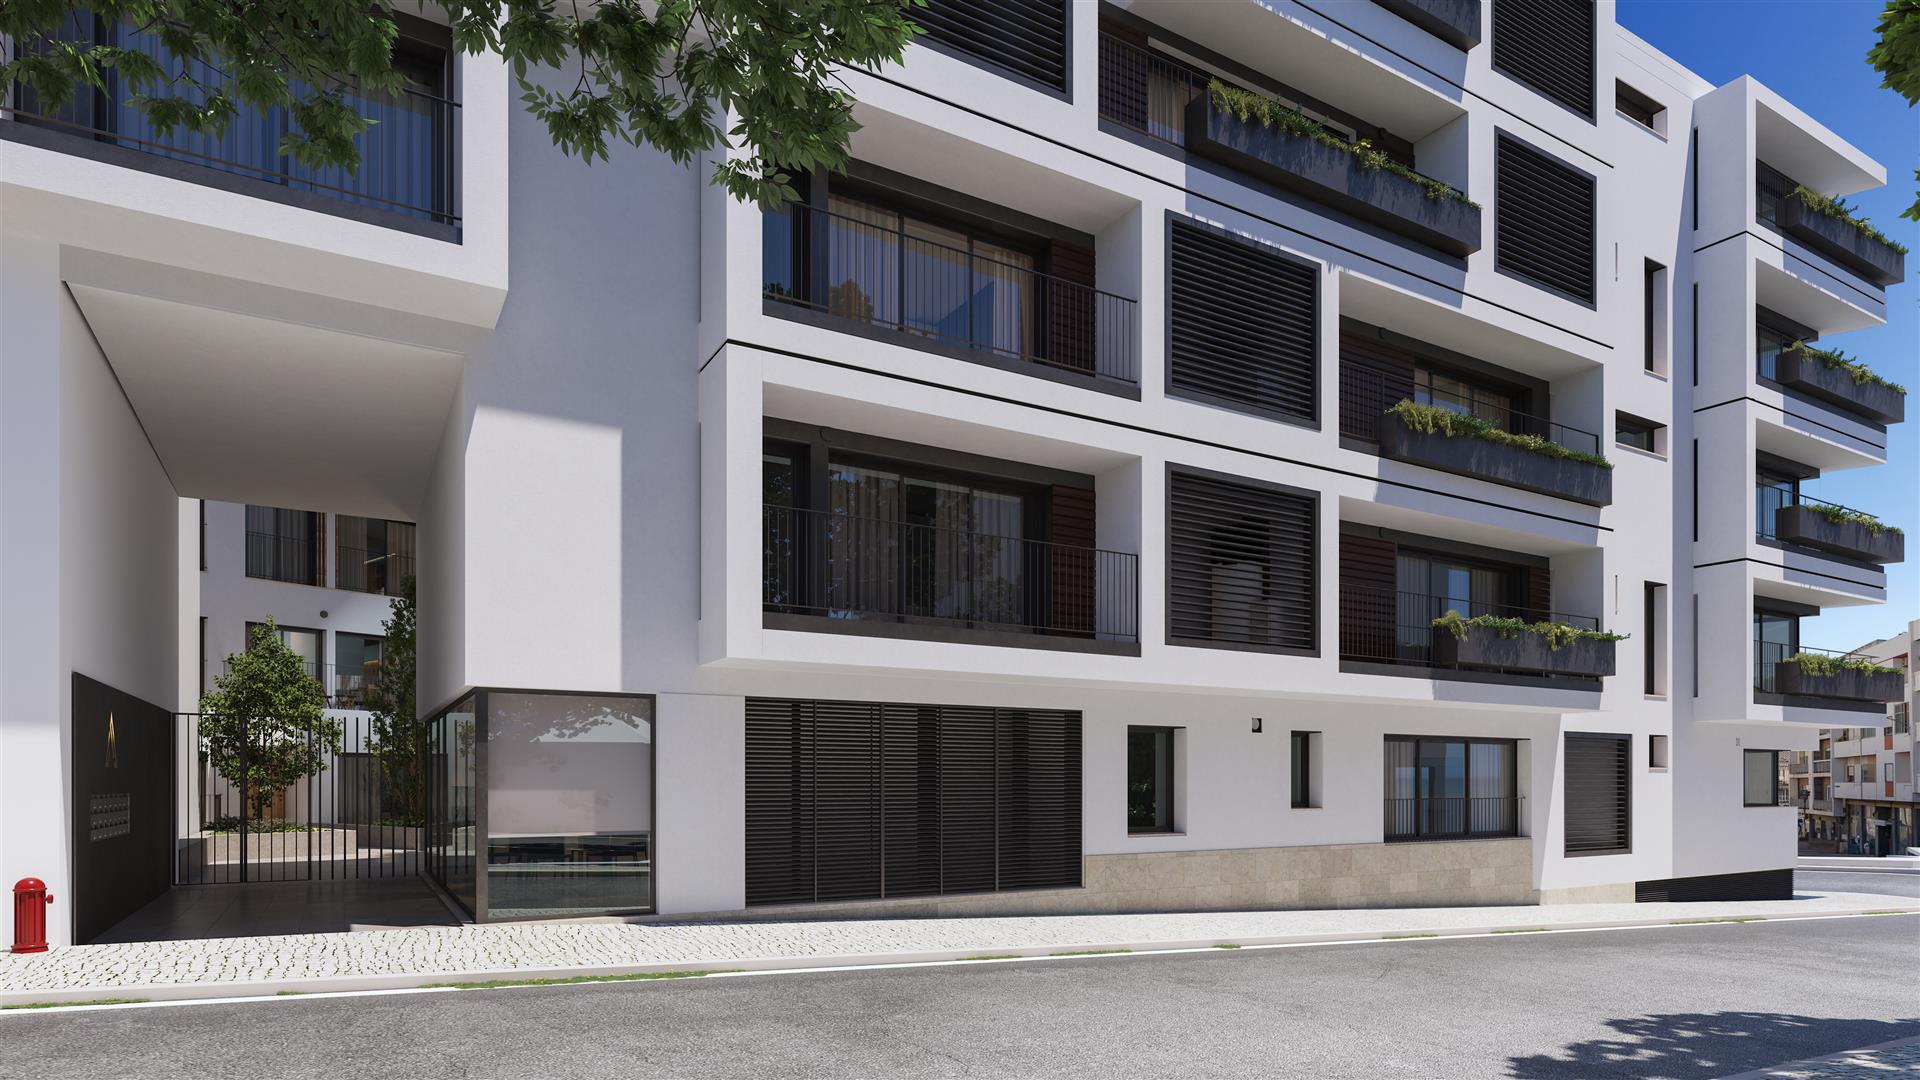 Maravilhoso apartamento em construção - Piscina, Terraço e dois estacionamentos